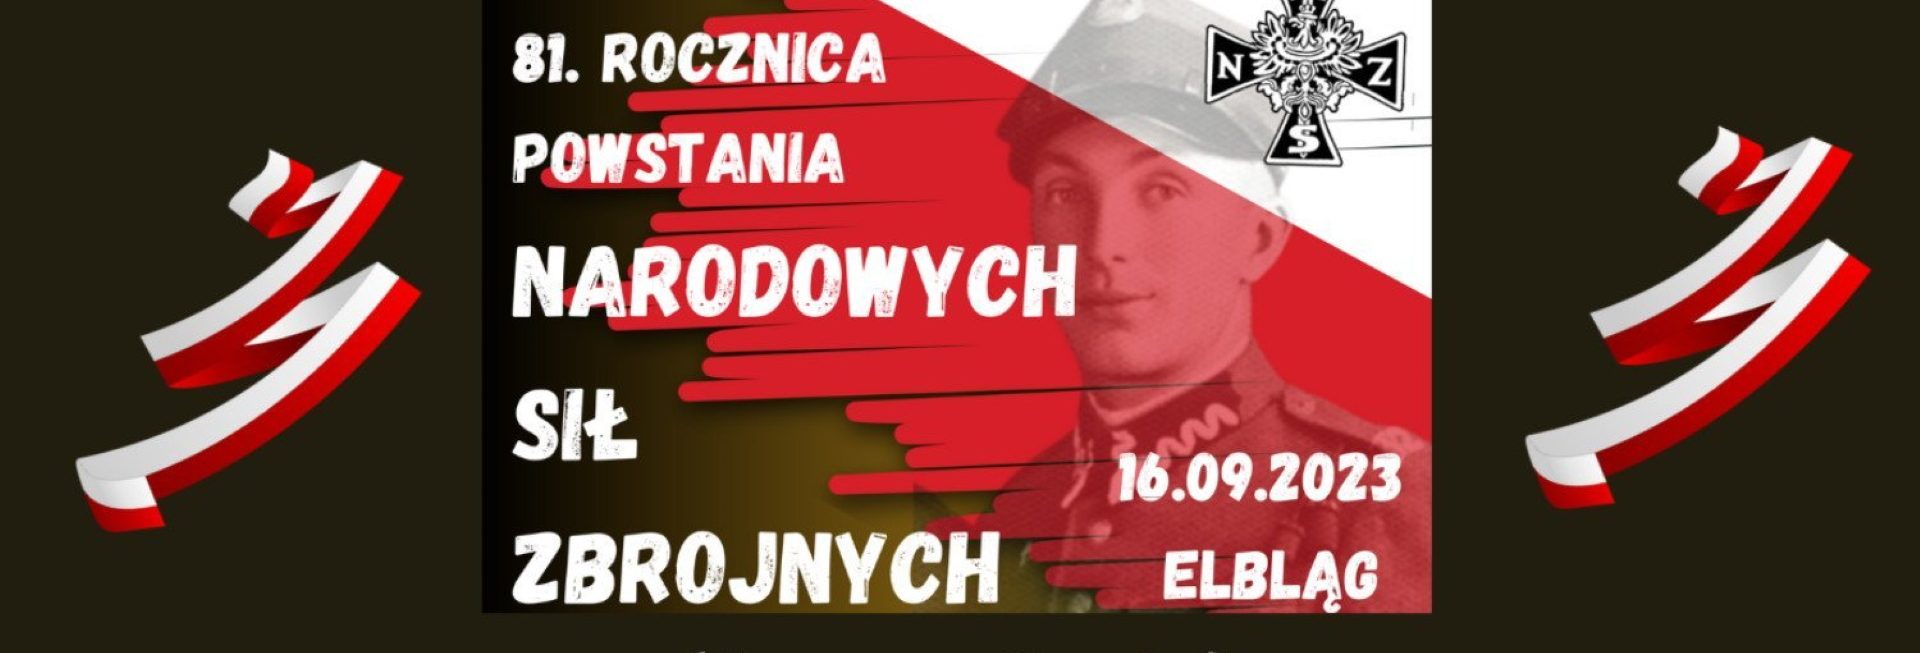 Plakat zapraszający w sobotę 16 września 2023 r. do Elbląga na 81. Rocznicę Powstania Narodowych Sił Zbrojnych ELBLĄG 2023.